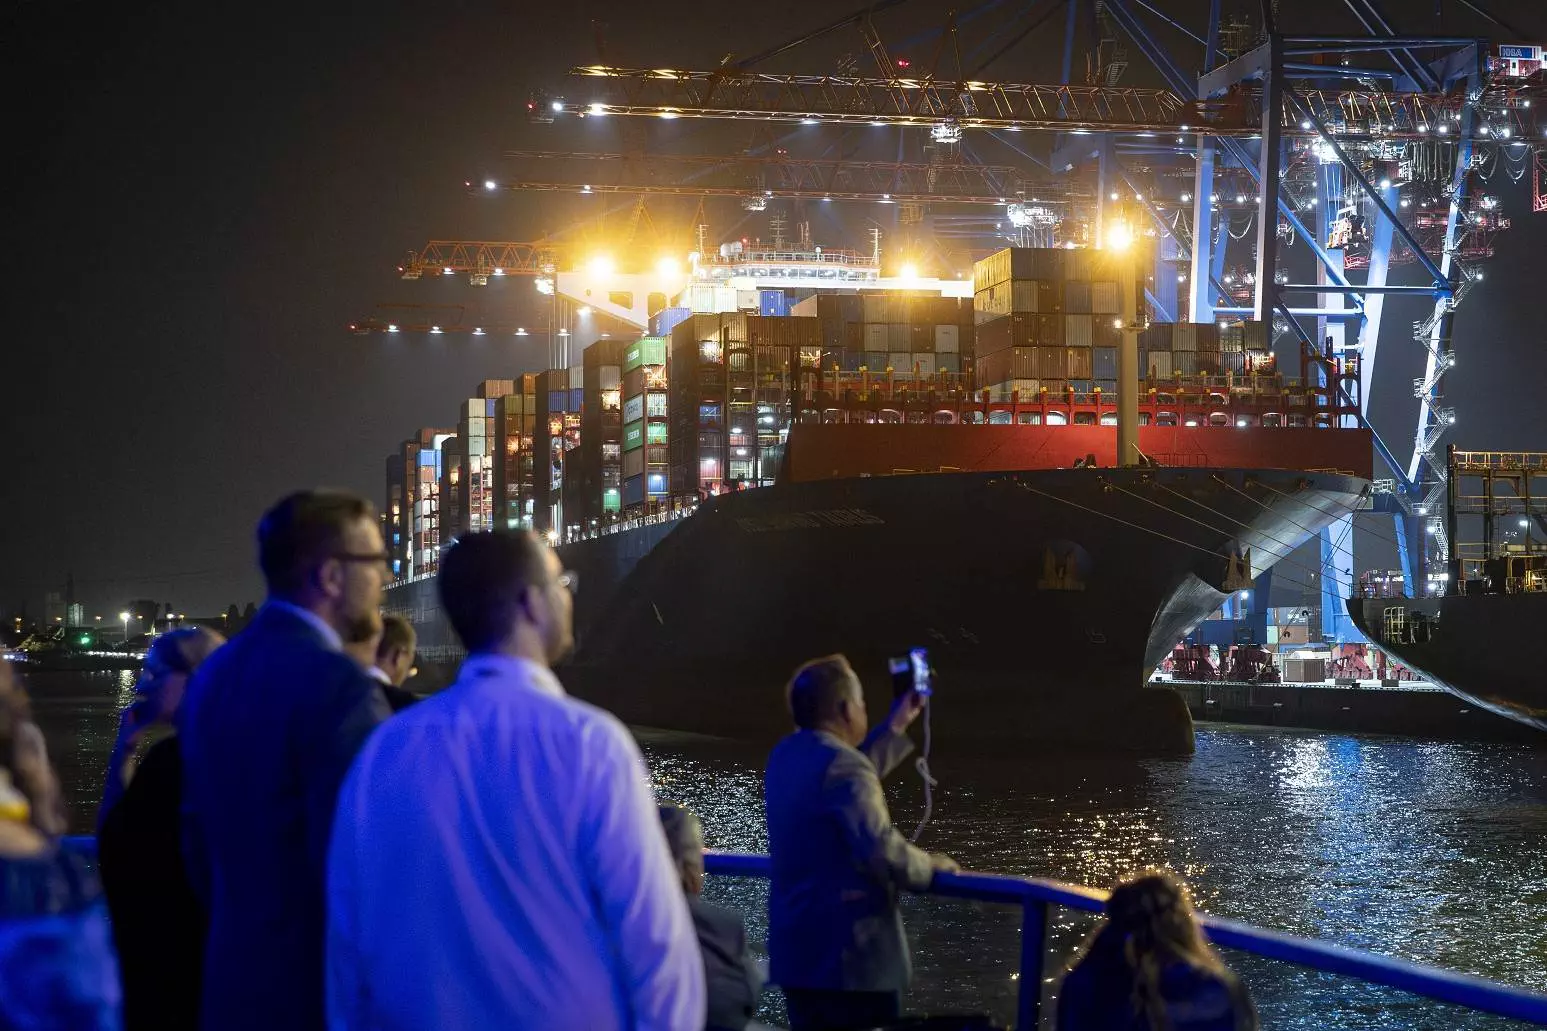 Beeindruckend war auch die abendliche Hafenrundfahrt. Foto: Senatskanzlei Hamburg